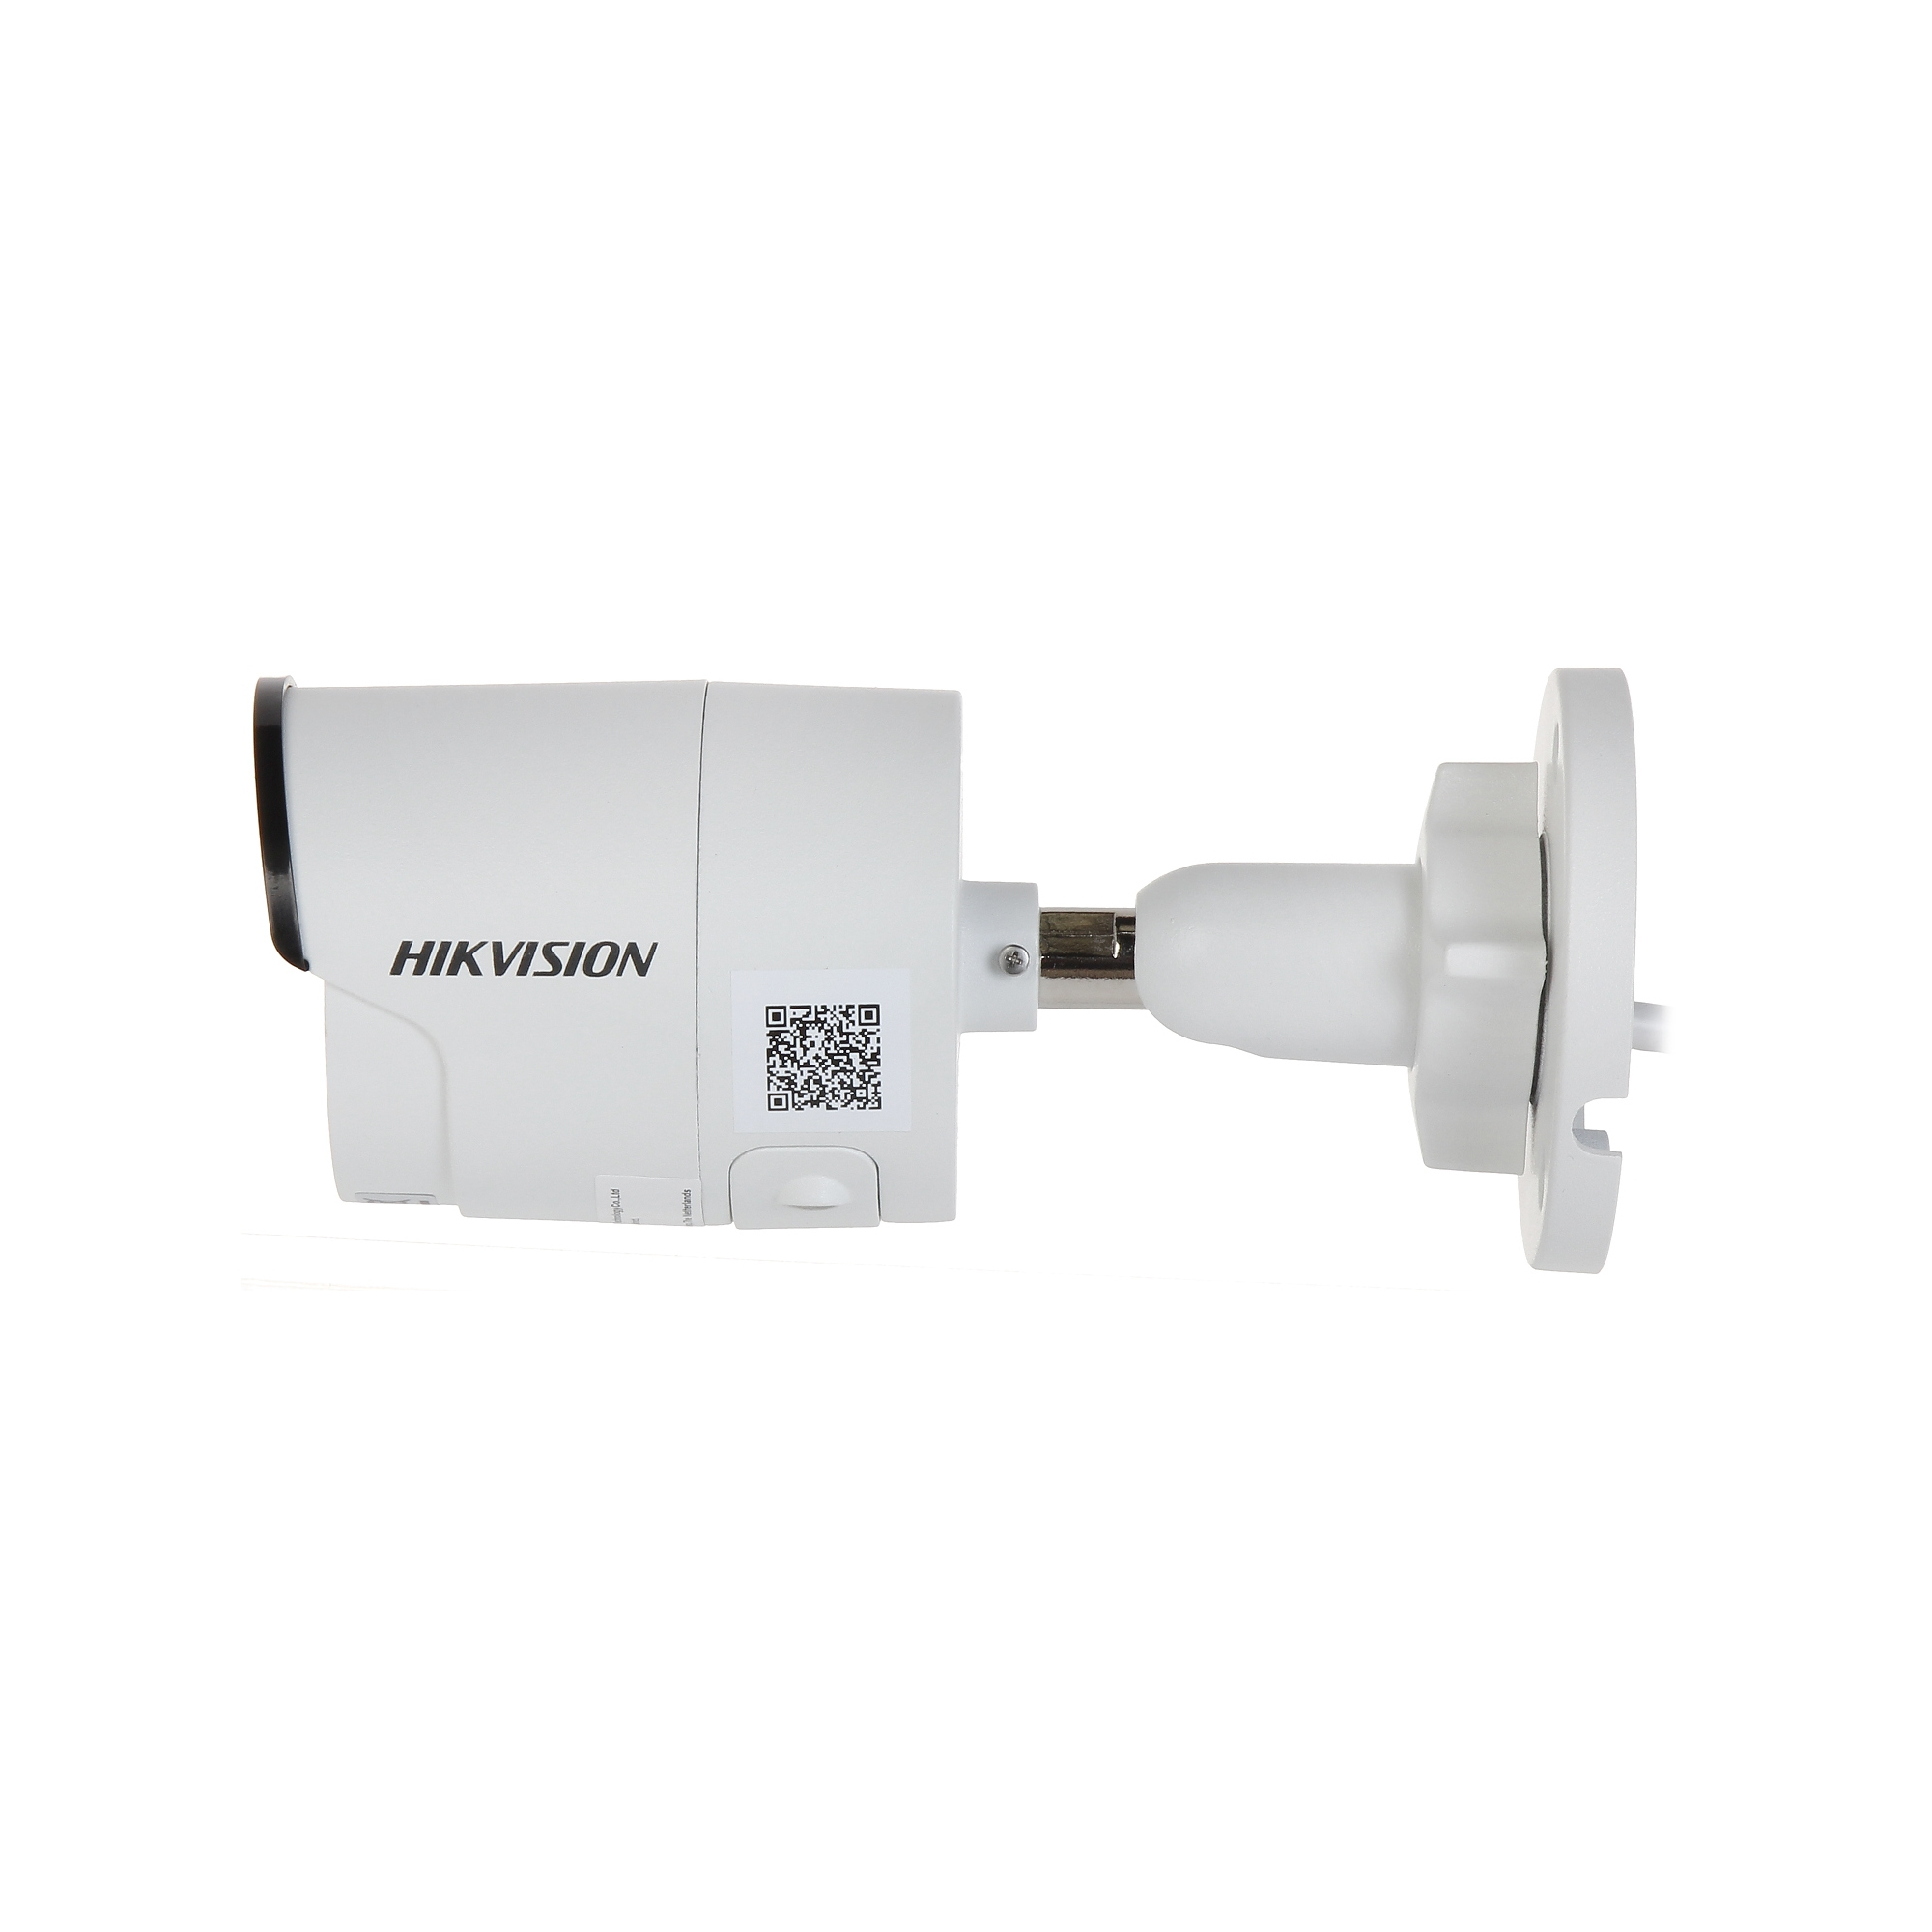 HIKVISION Hikvision DS-2CD2043G2-I(2.8mm), Kamera, Auflösung 4 IP Video: Megapixel